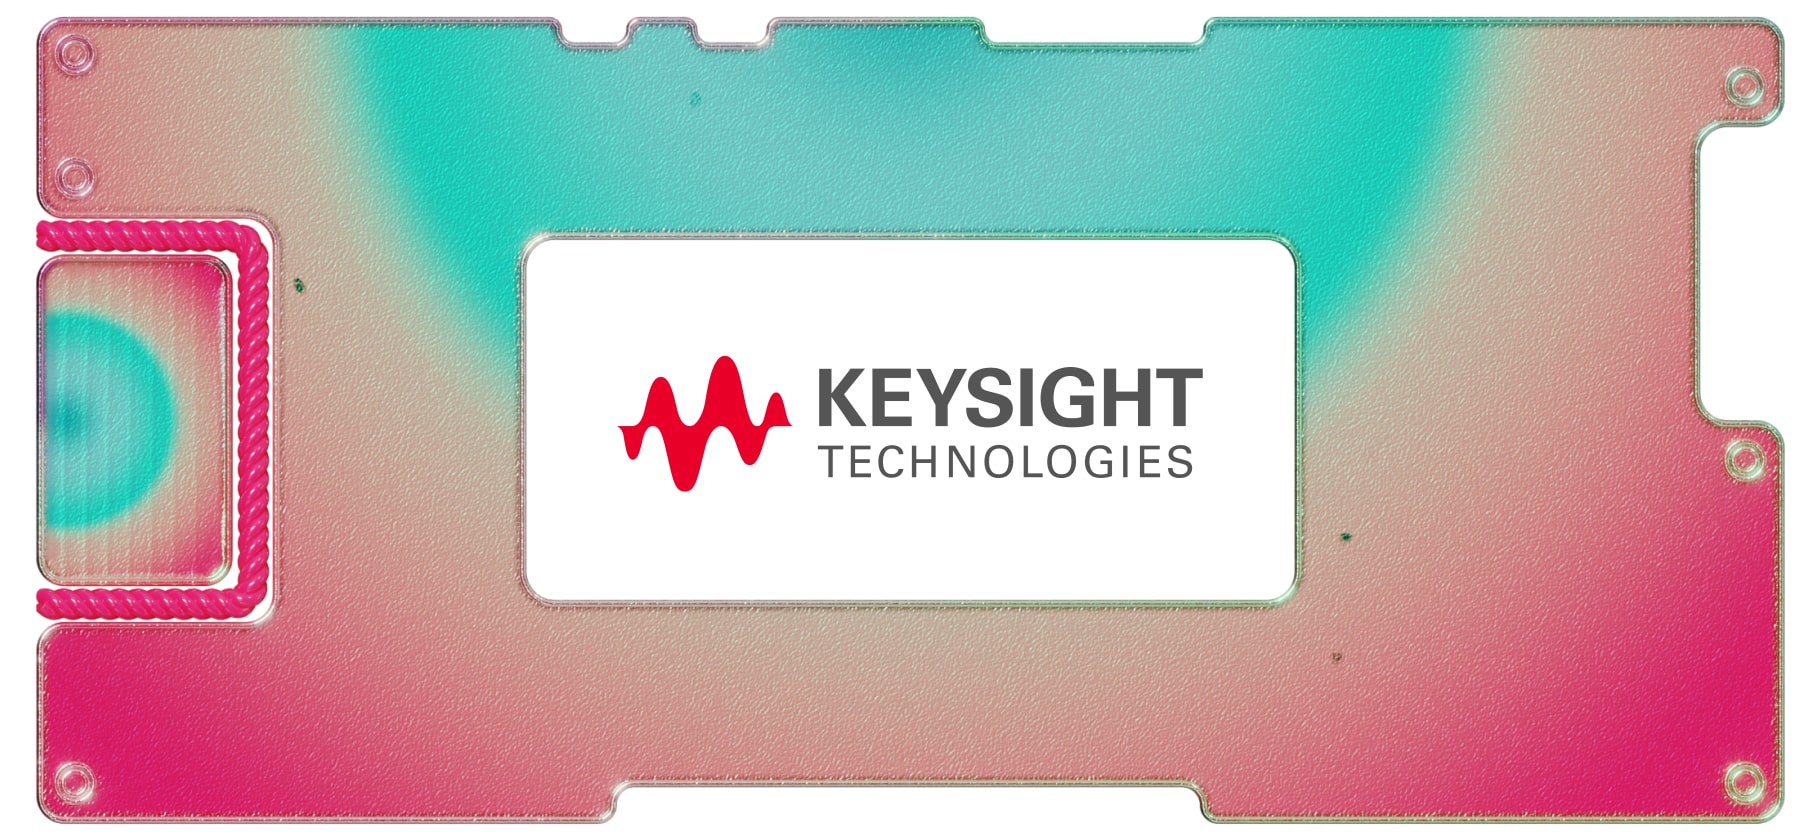 Инвестидея: Keysight Technologies, потому что заводы не смолкают